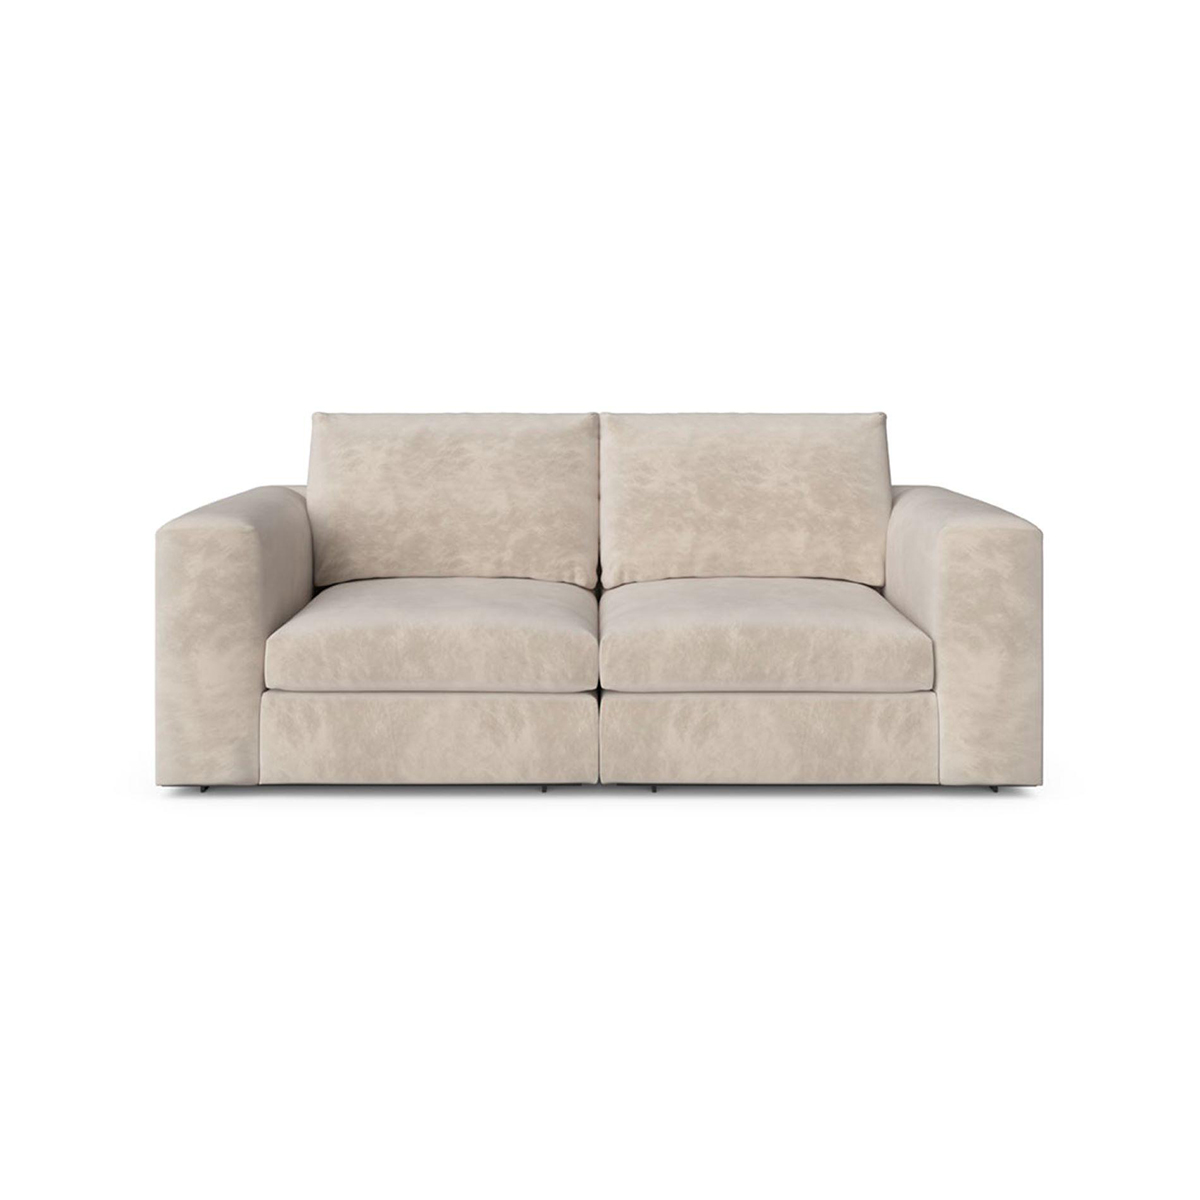 Cosily Modular Sofa